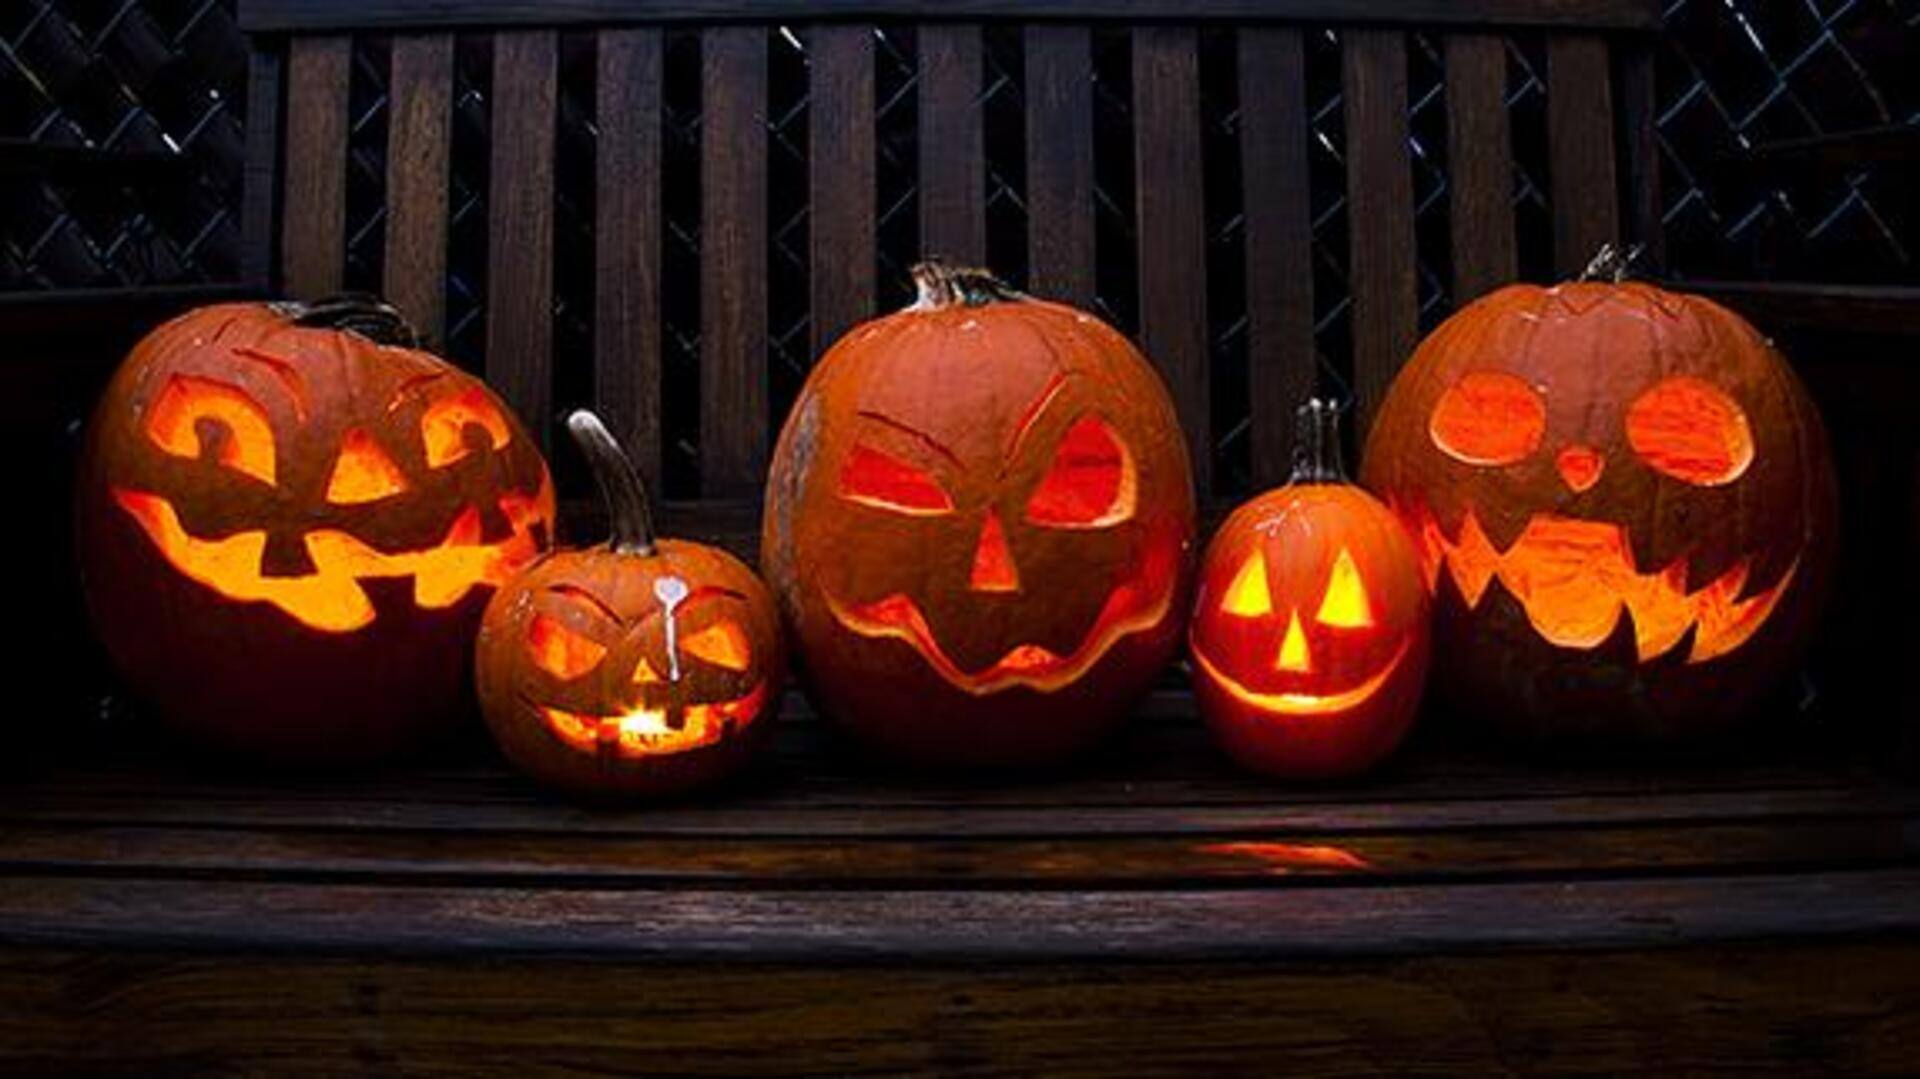 Spooktacular ideas for easy Halloween decor